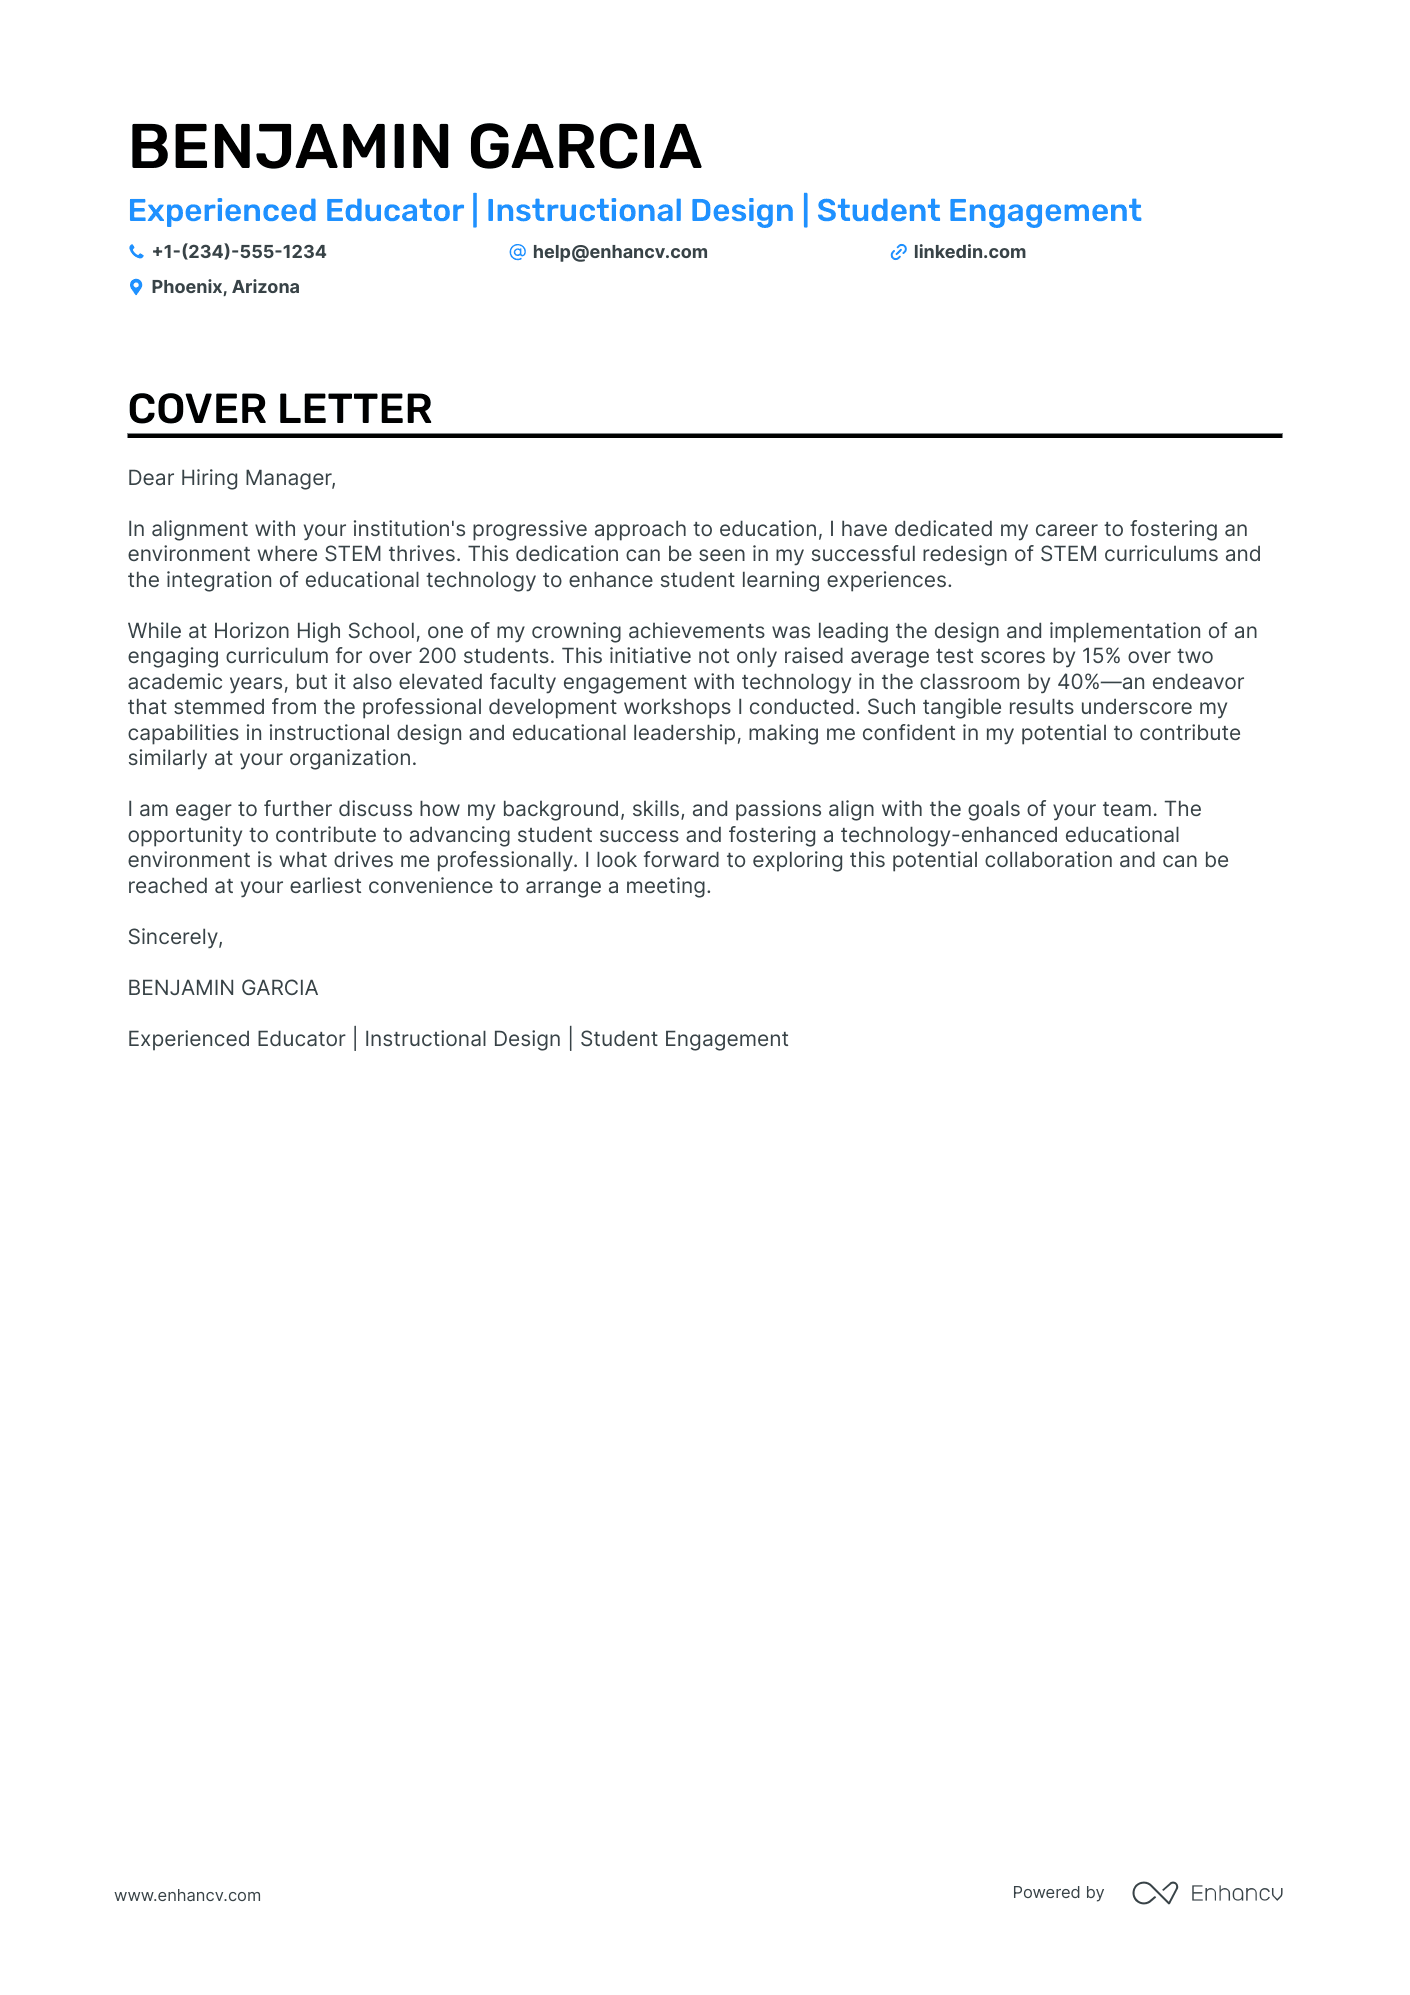 Online Teacher cover letter